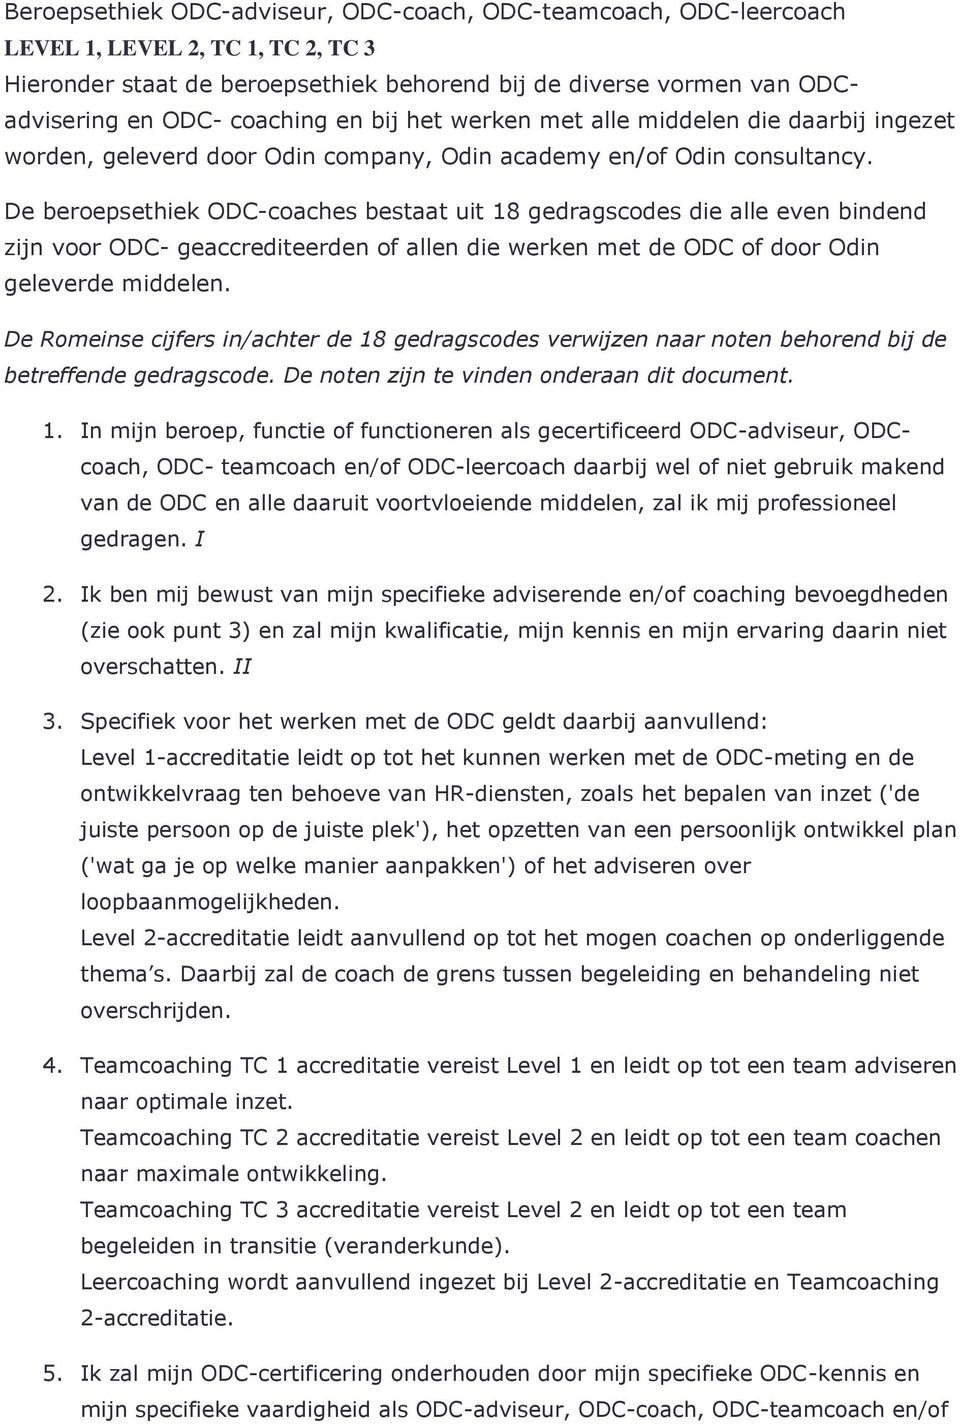 De beroepsethiek ODC-coaches bestaat uit 18 gedragscodes die alle even bindend zijn voor ODC- geaccrediteerden of allen die werken met de ODC of door Odin geleverde middelen.